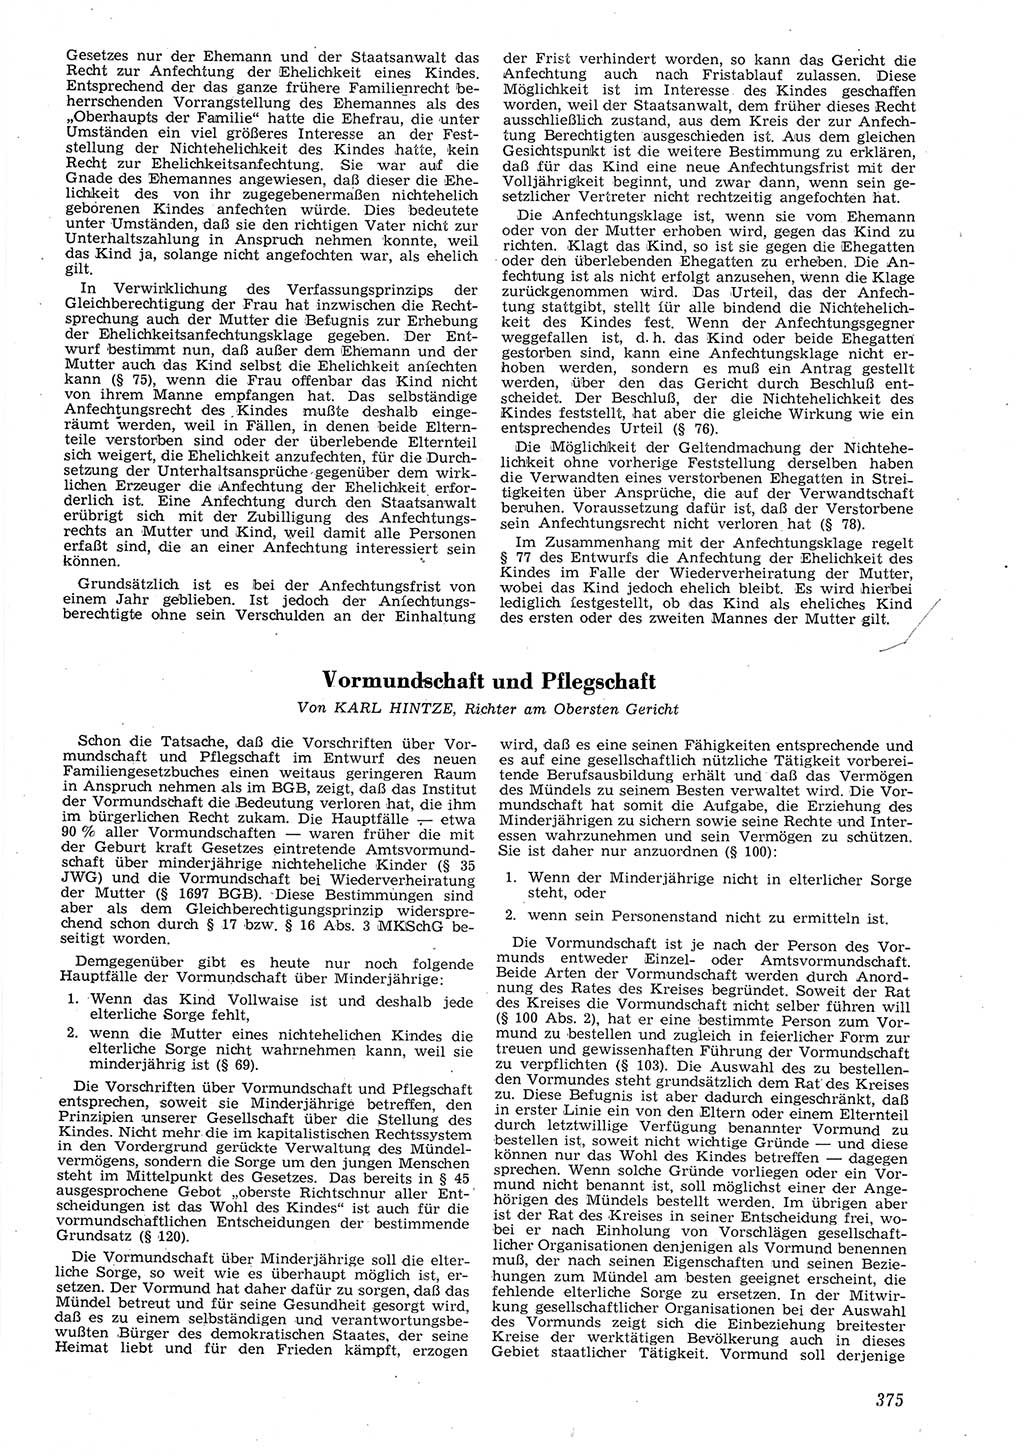 Neue Justiz (NJ), Zeitschrift für Recht und Rechtswissenschaft [Deutsche Demokratische Republik (DDR)], 8. Jahrgang 1954, Seite 375 (NJ DDR 1954, S. 375)